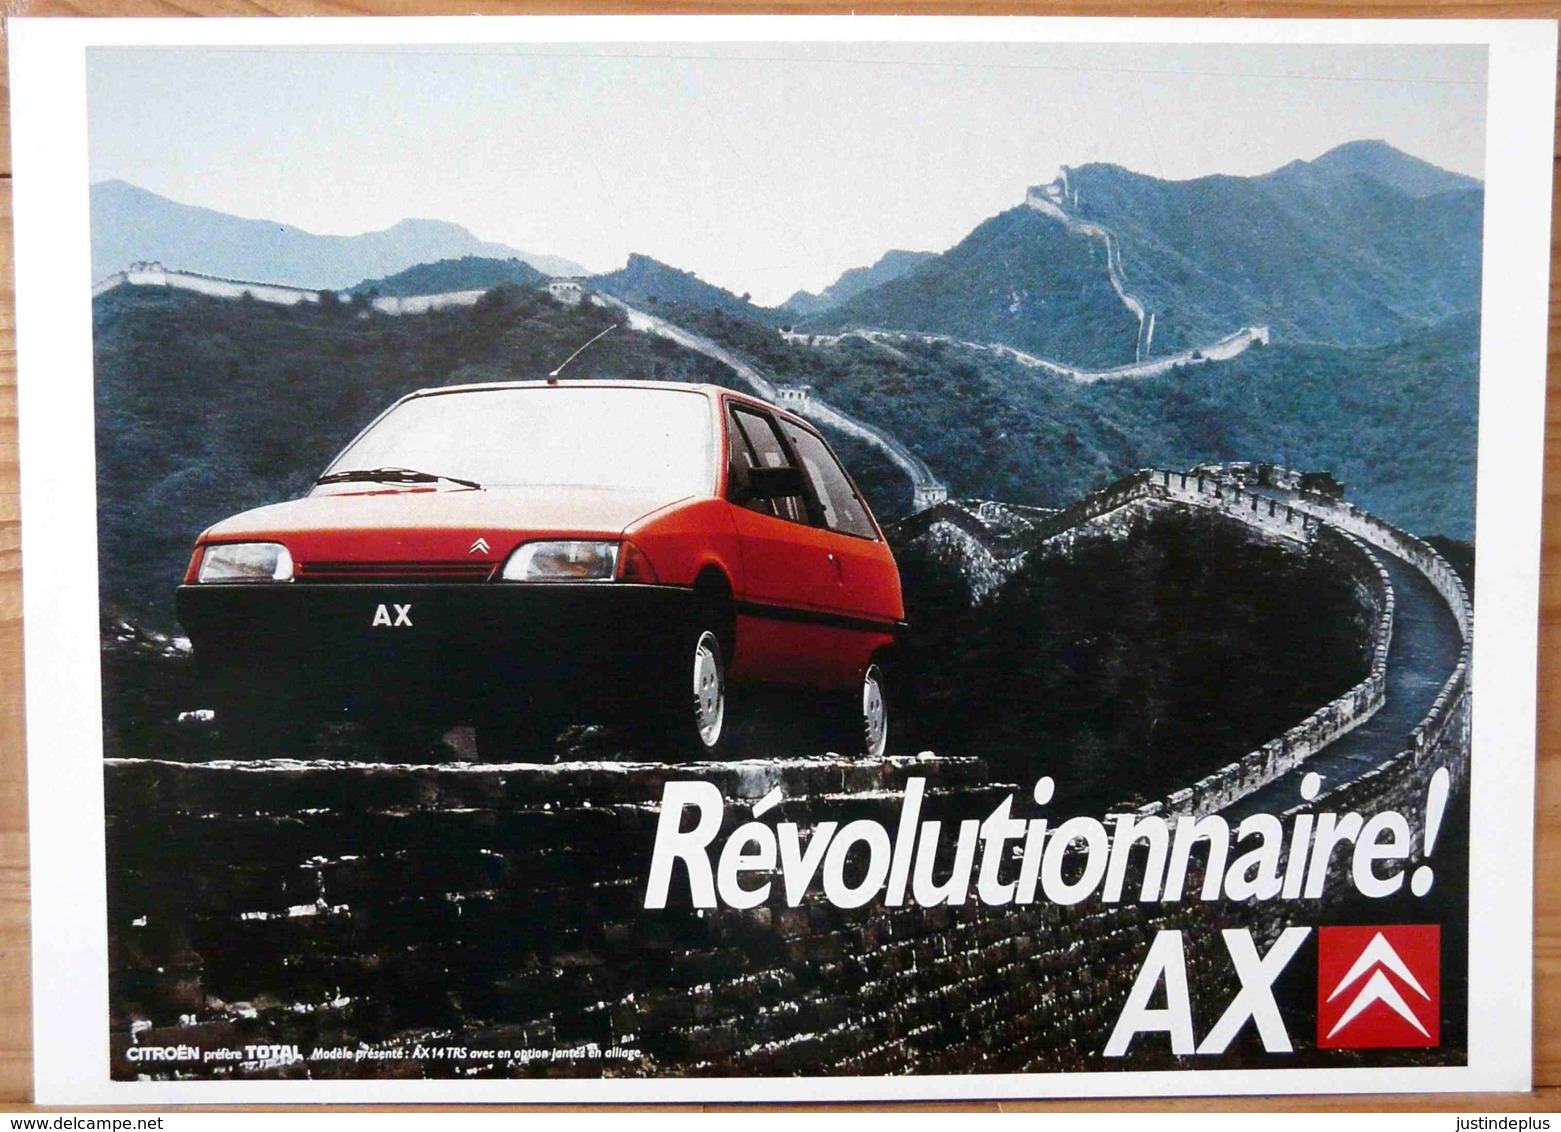 AFFICHE CITROEN REVOLUTIONNAIRE AX SUR LA MURAILLE DE CHINE - Automobile